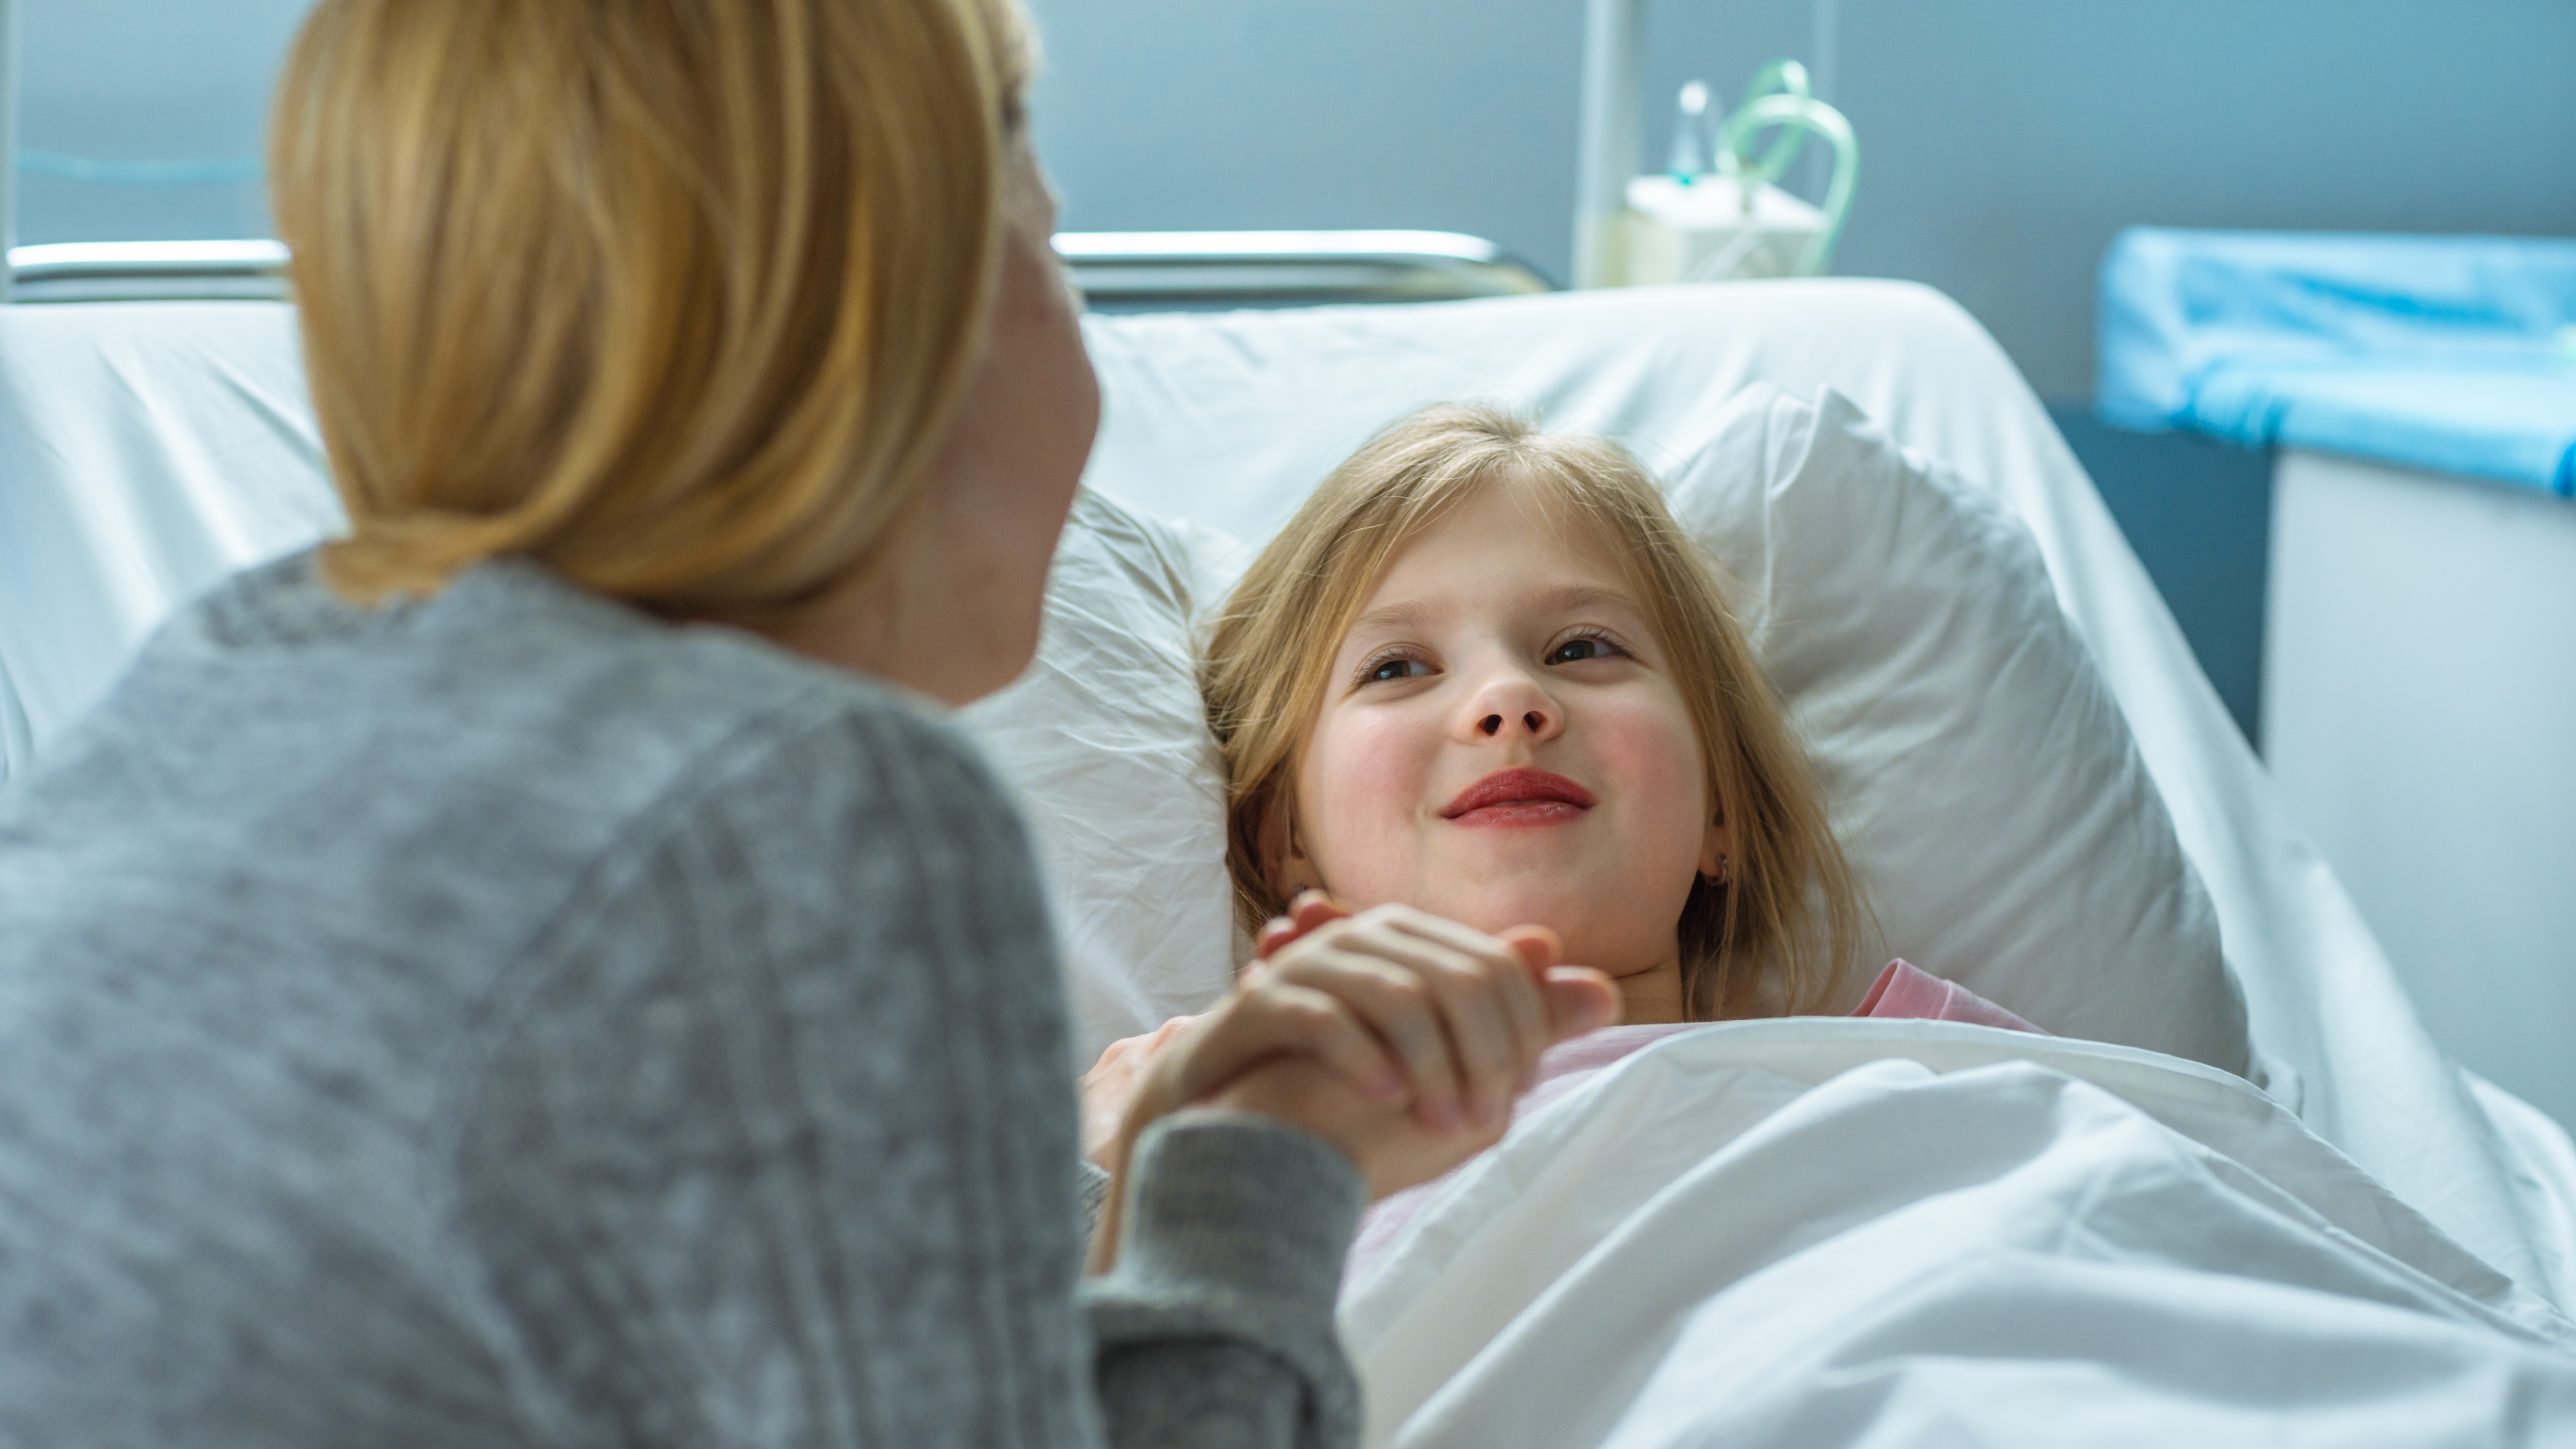 Una madre apoya a su hija en la sala del hospital | Fuente: Shutterstock.com